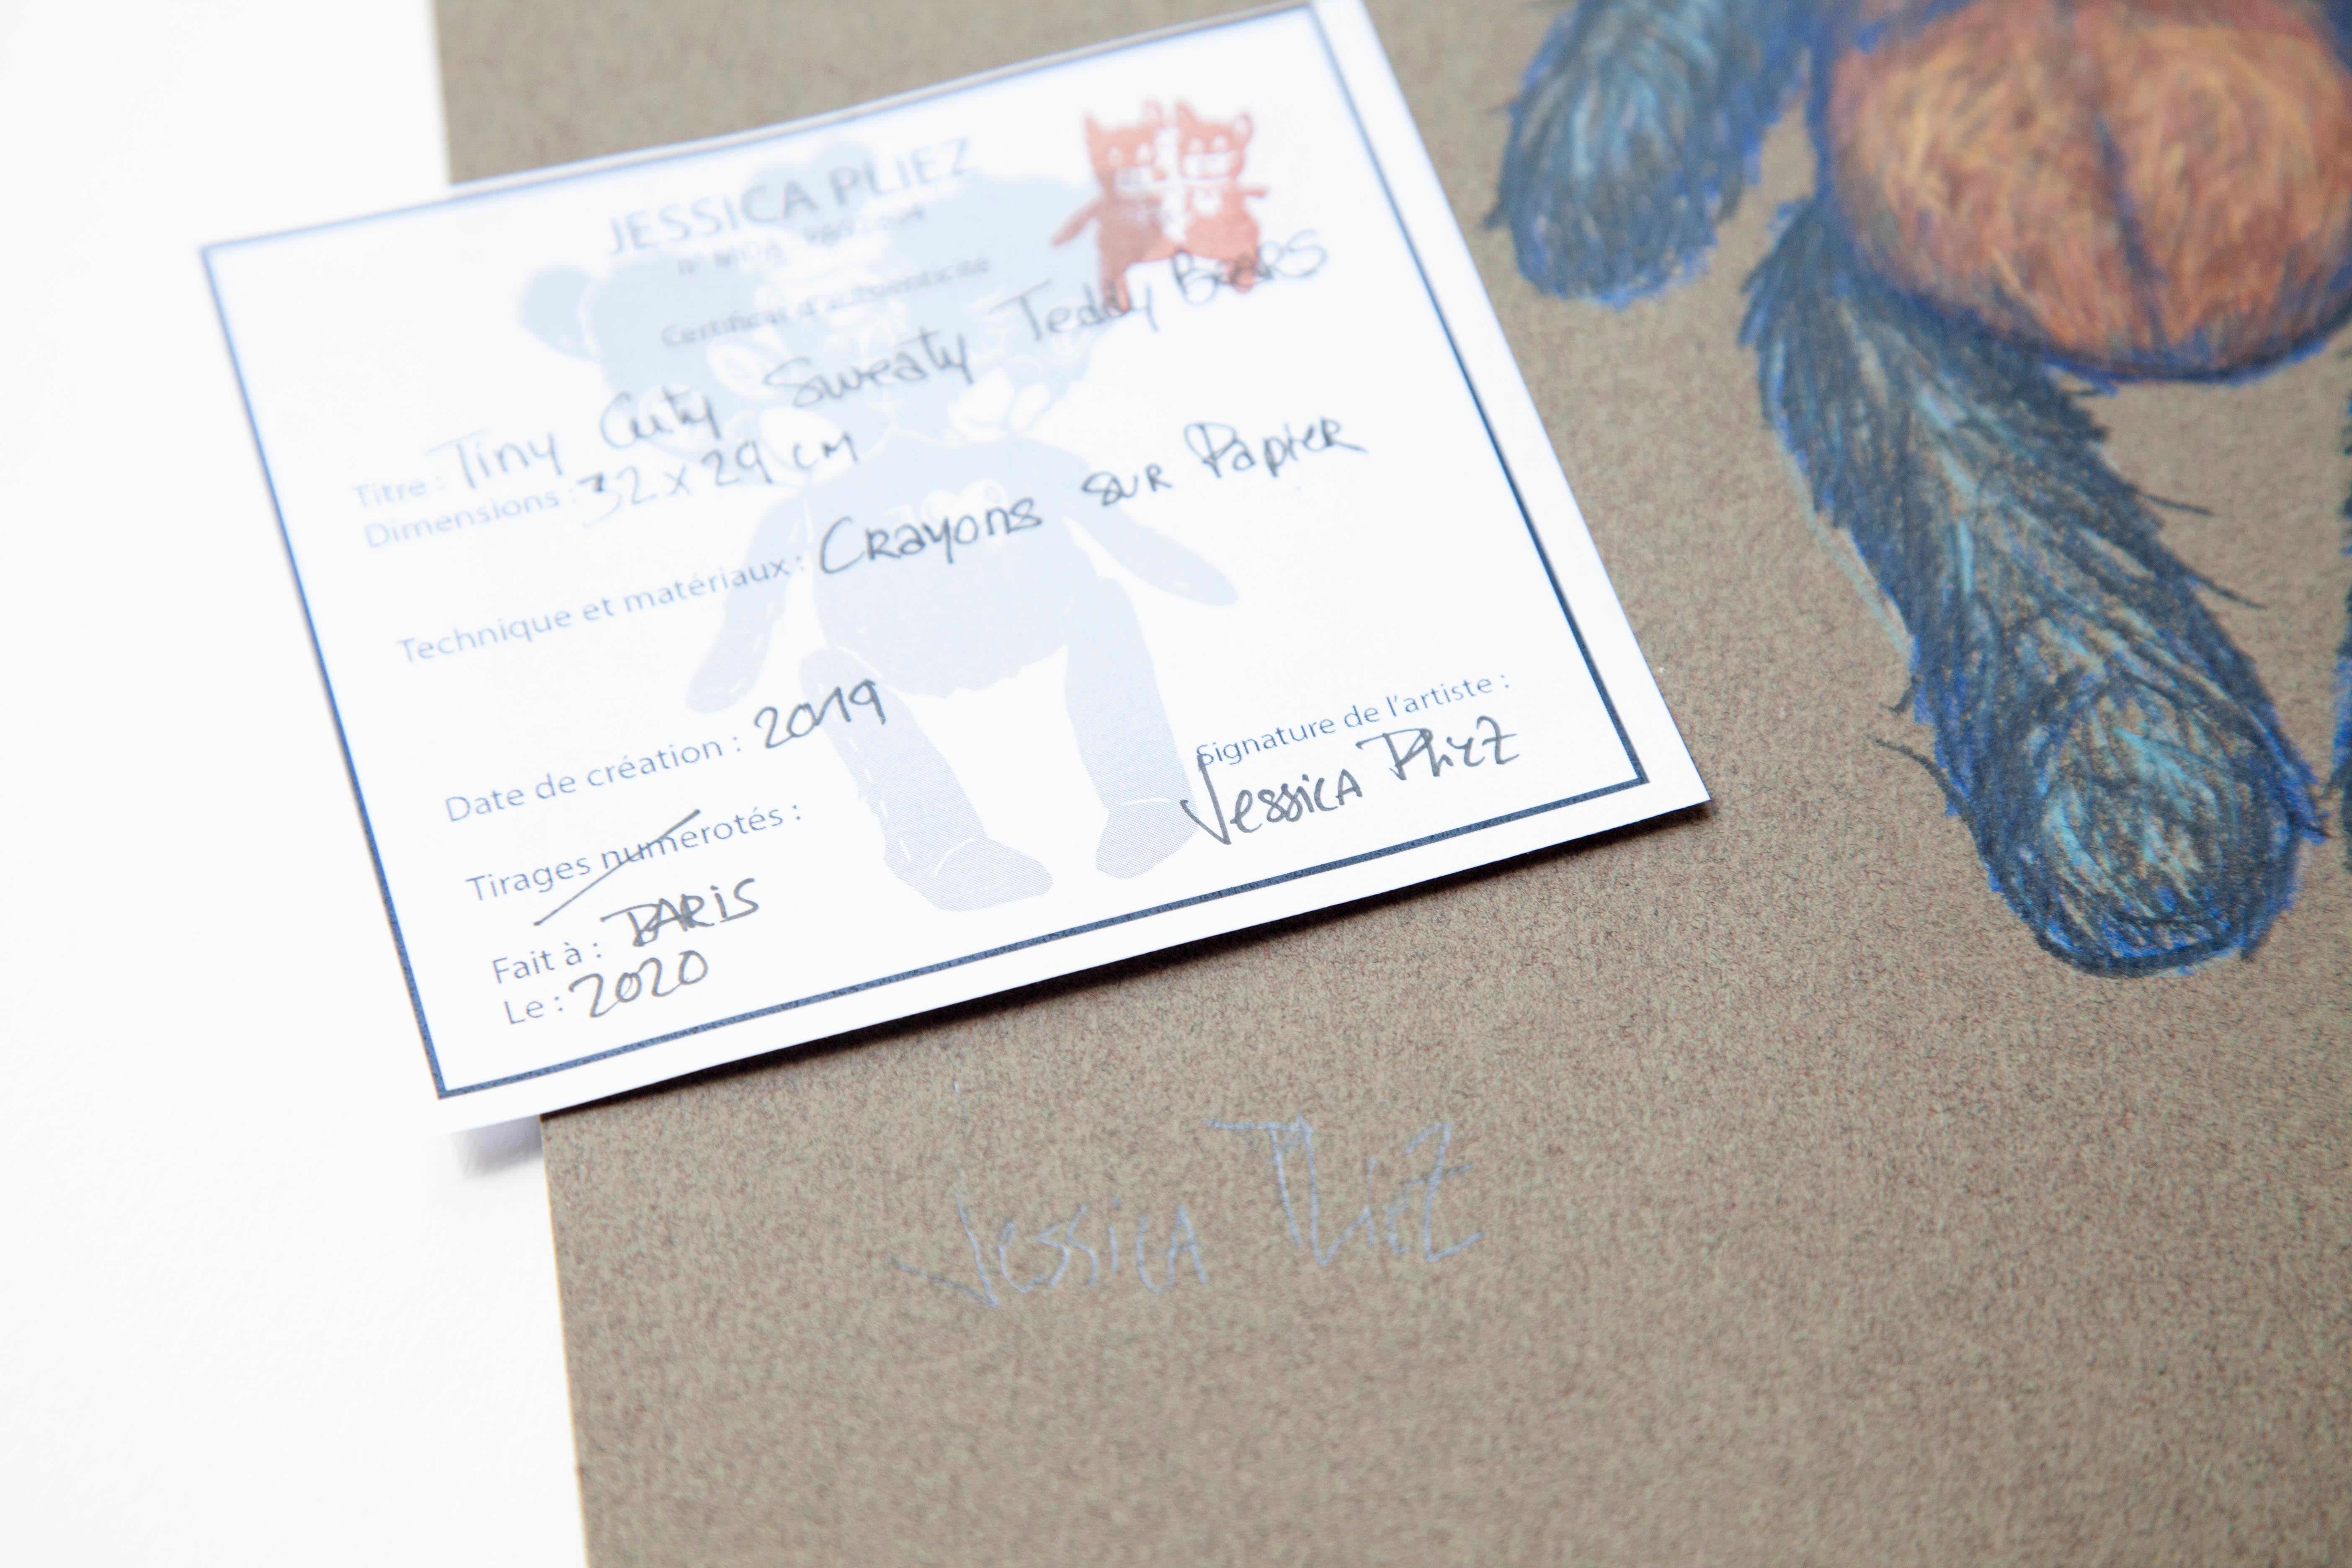 Jessica Pliez, artiste à l'univers poétique et infantile, qui rappelle le cinéaste Tim Burton, aime les supports surprenants.

2020
Dessin / Crayon sur carton
32 x 29 cm
Œuvre originale signée
Certificat d'artiste
Prix de vente : 250 euros